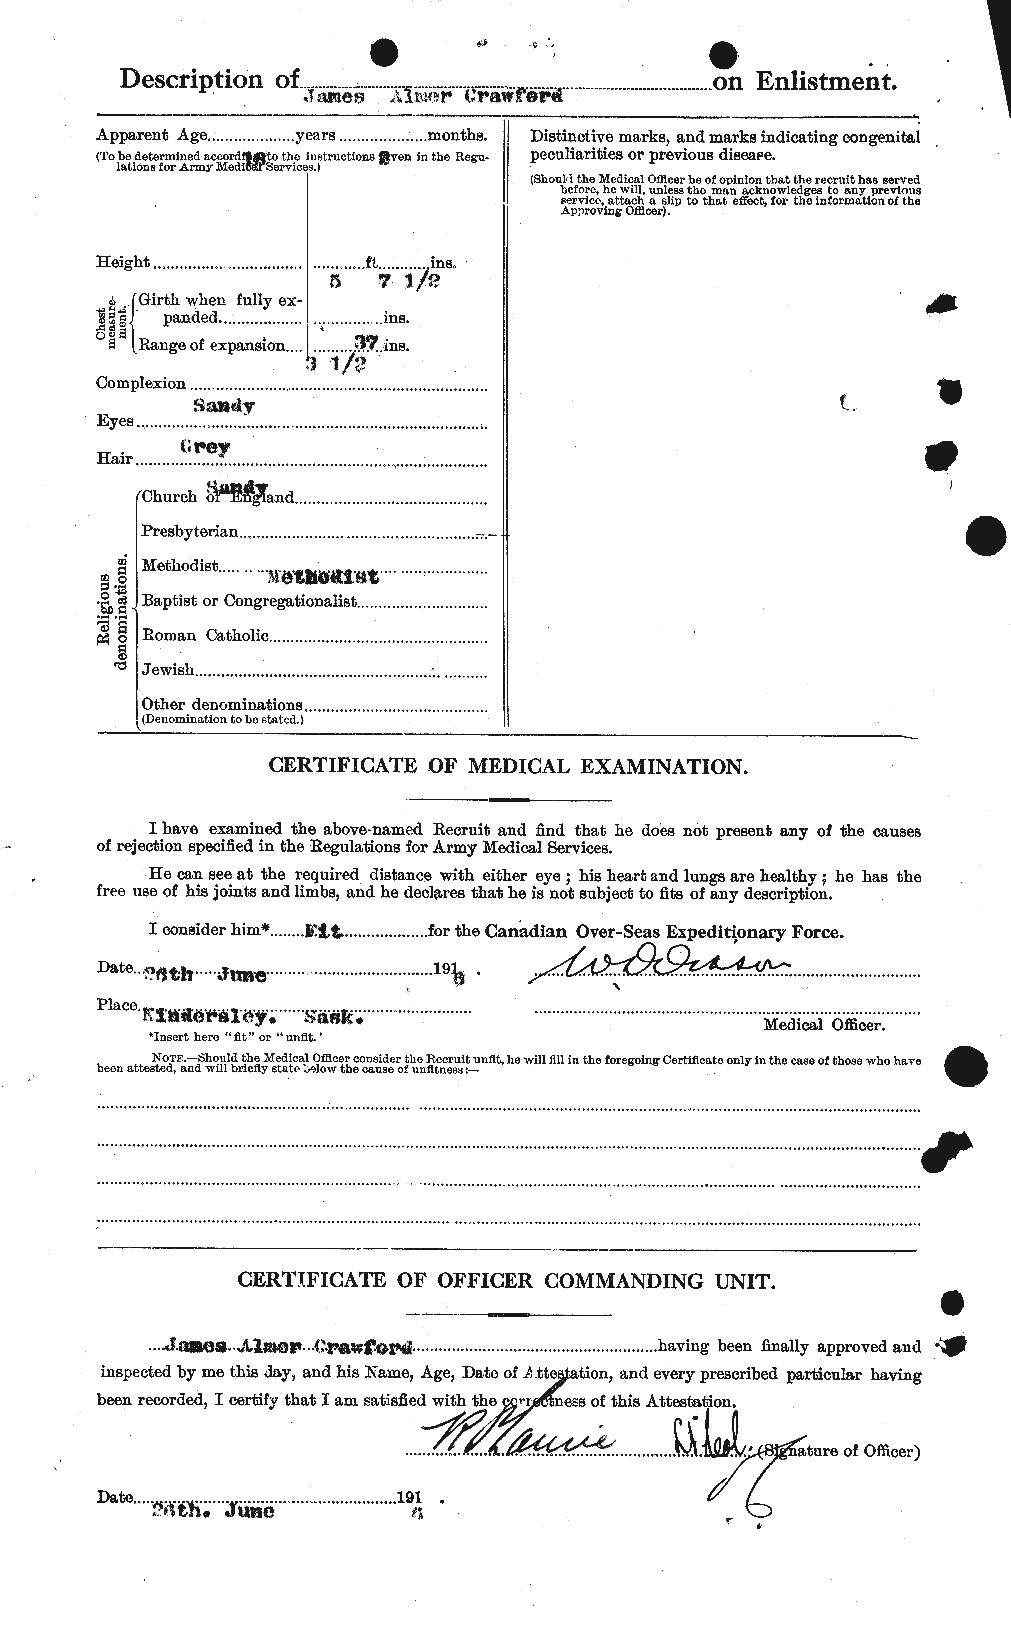 Dossiers du Personnel de la Première Guerre mondiale - CEC 062761b